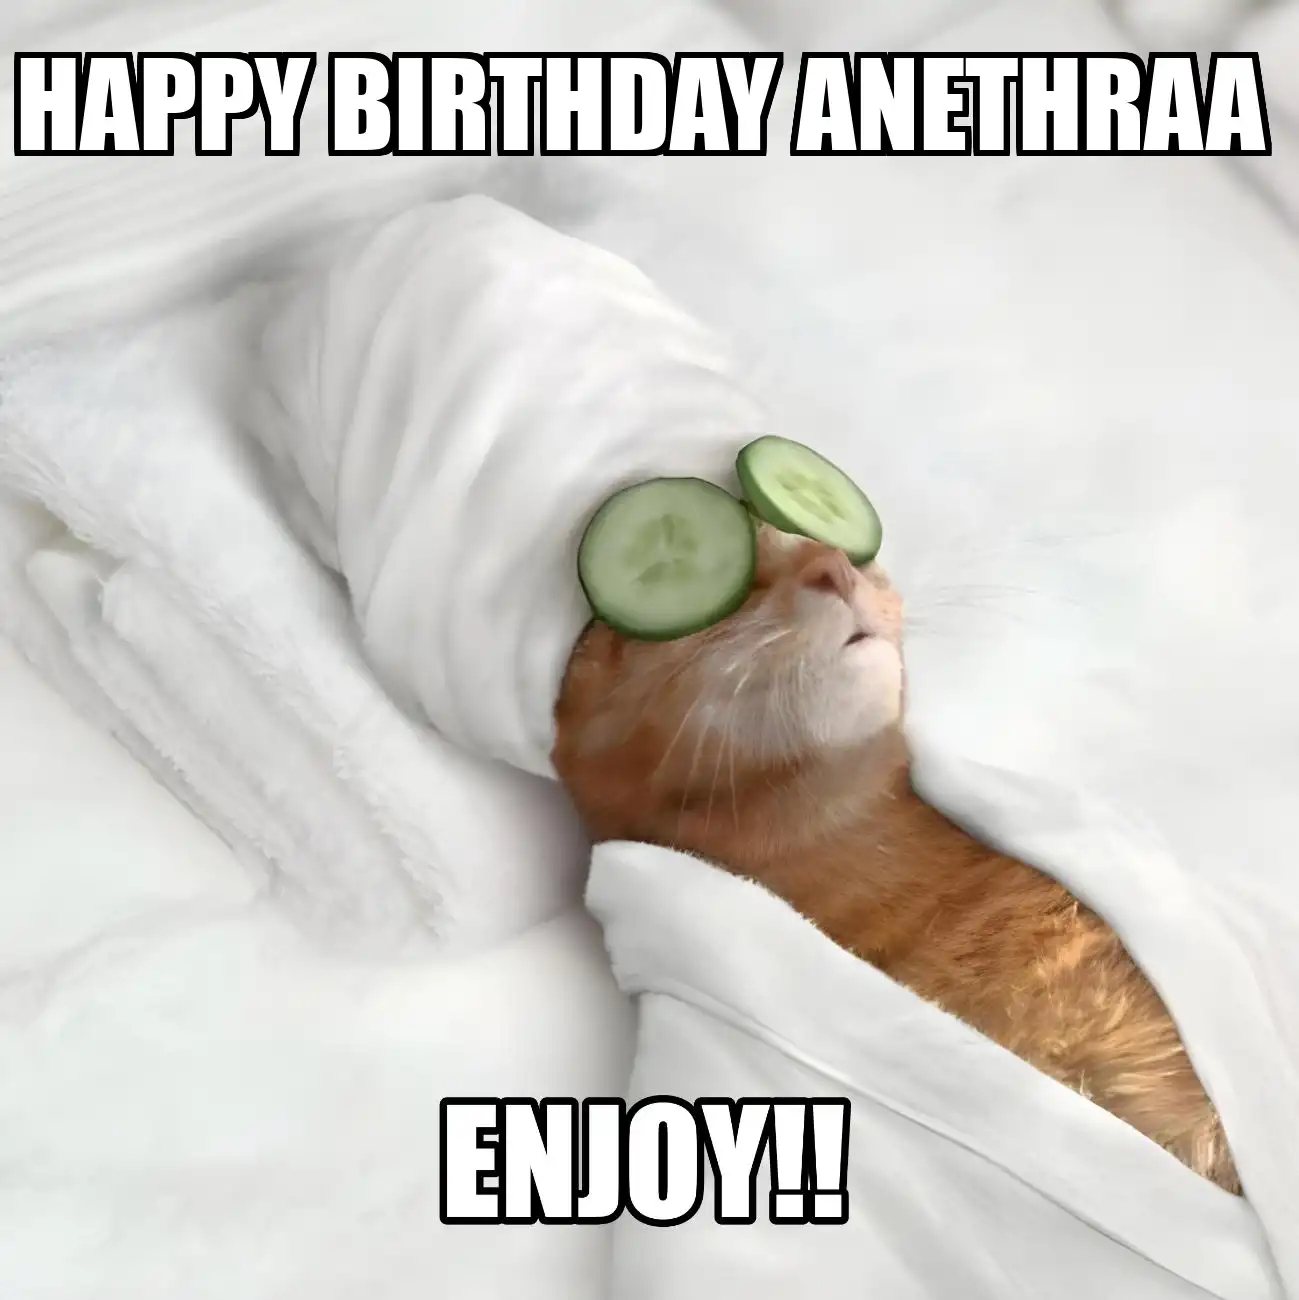 Happy Birthday Anethraa Enjoy Cat Meme